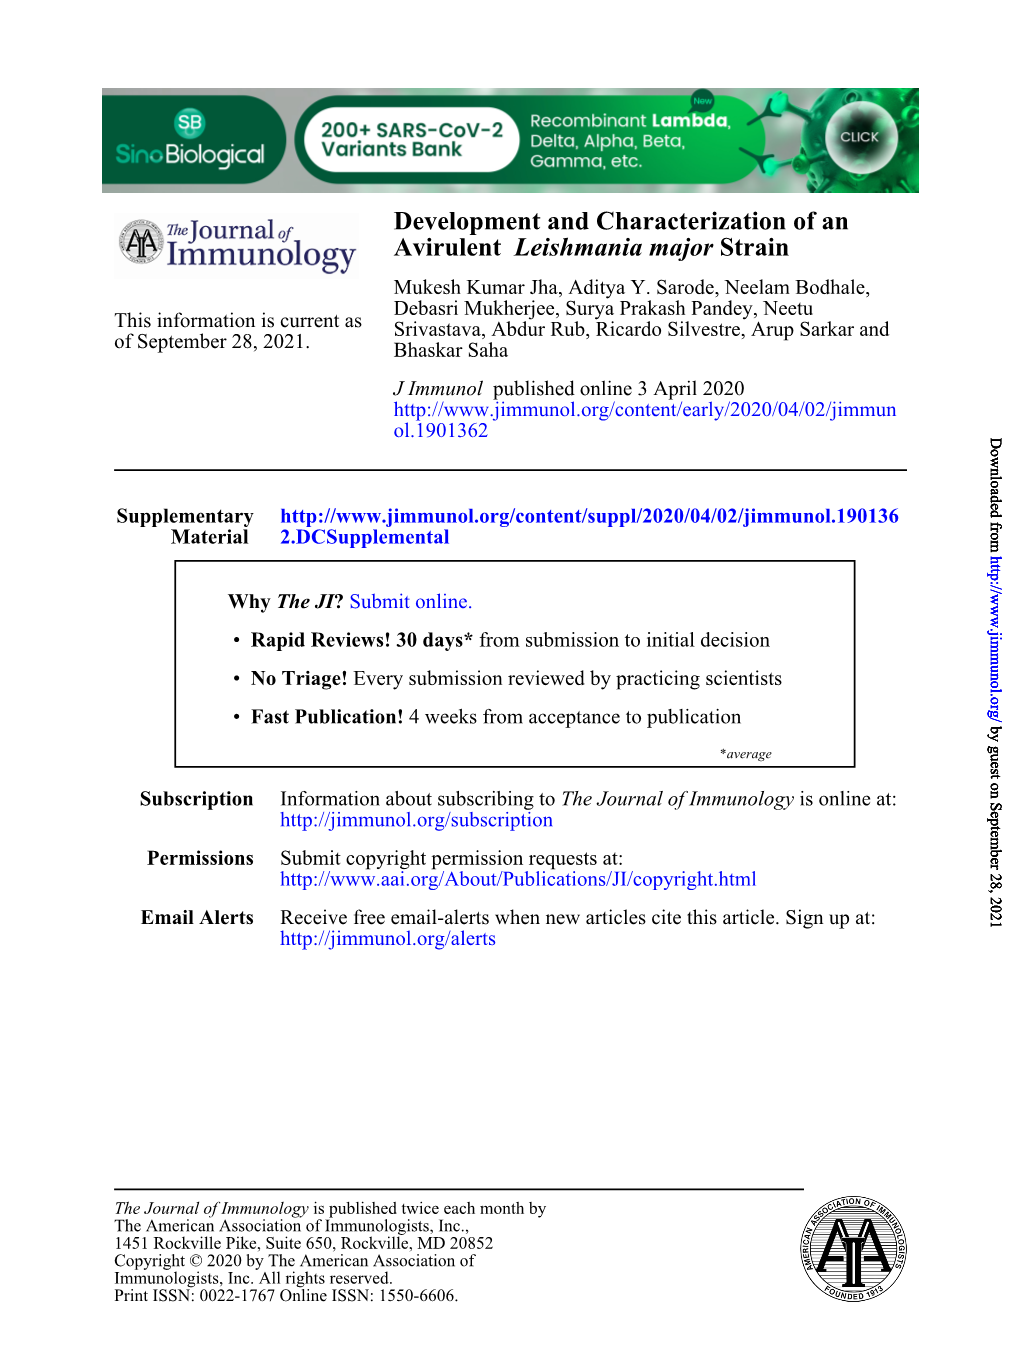 Development and Characterization of an Avirulent Leishmania Major Strain Mukesh Kumar Jha, Aditya Y